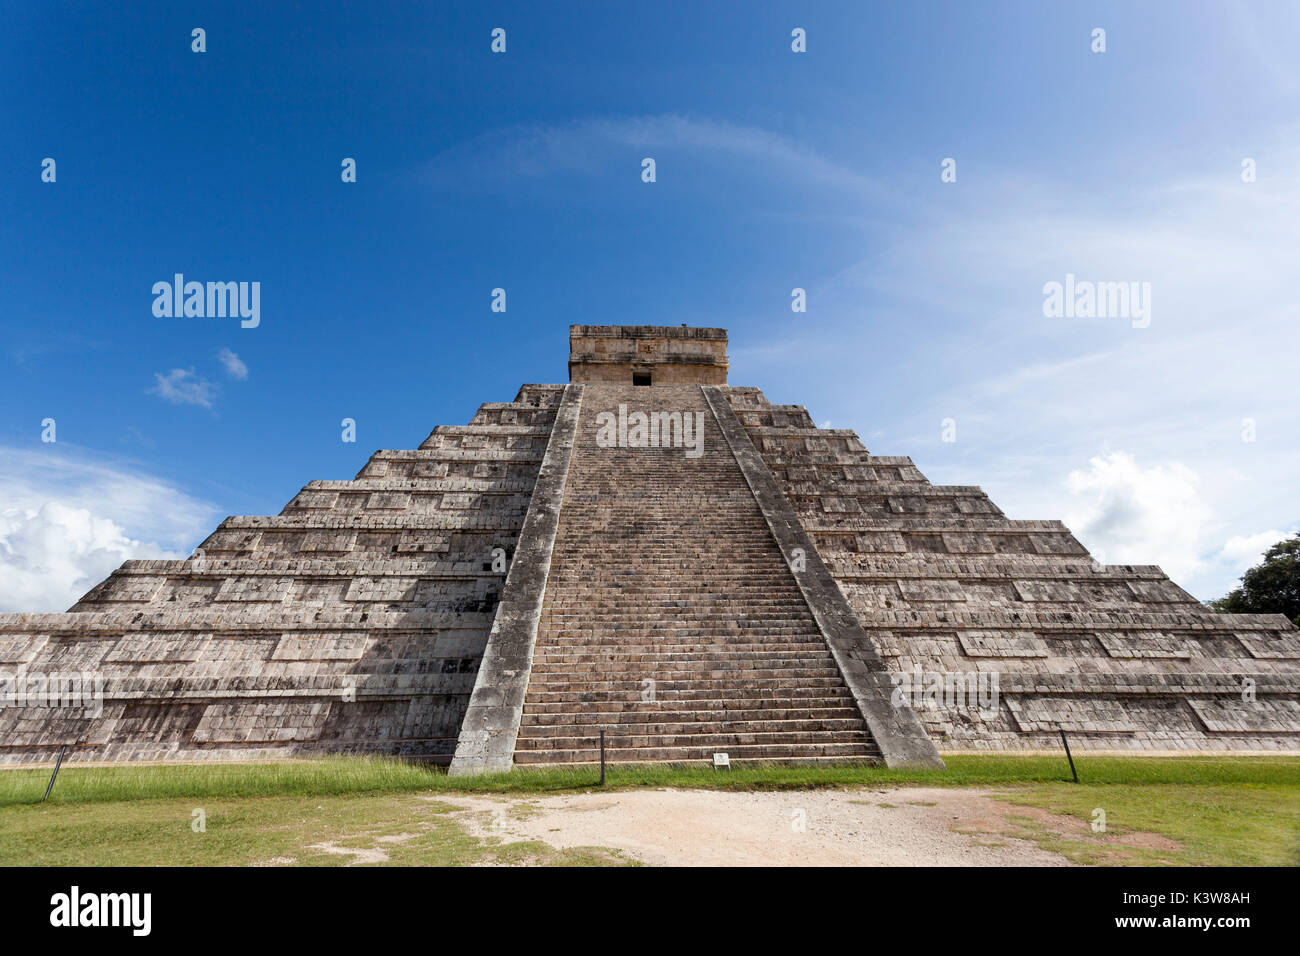 El Castillo, Chichen Itza archeological site, Yucatan, Mexico. Stock Photo